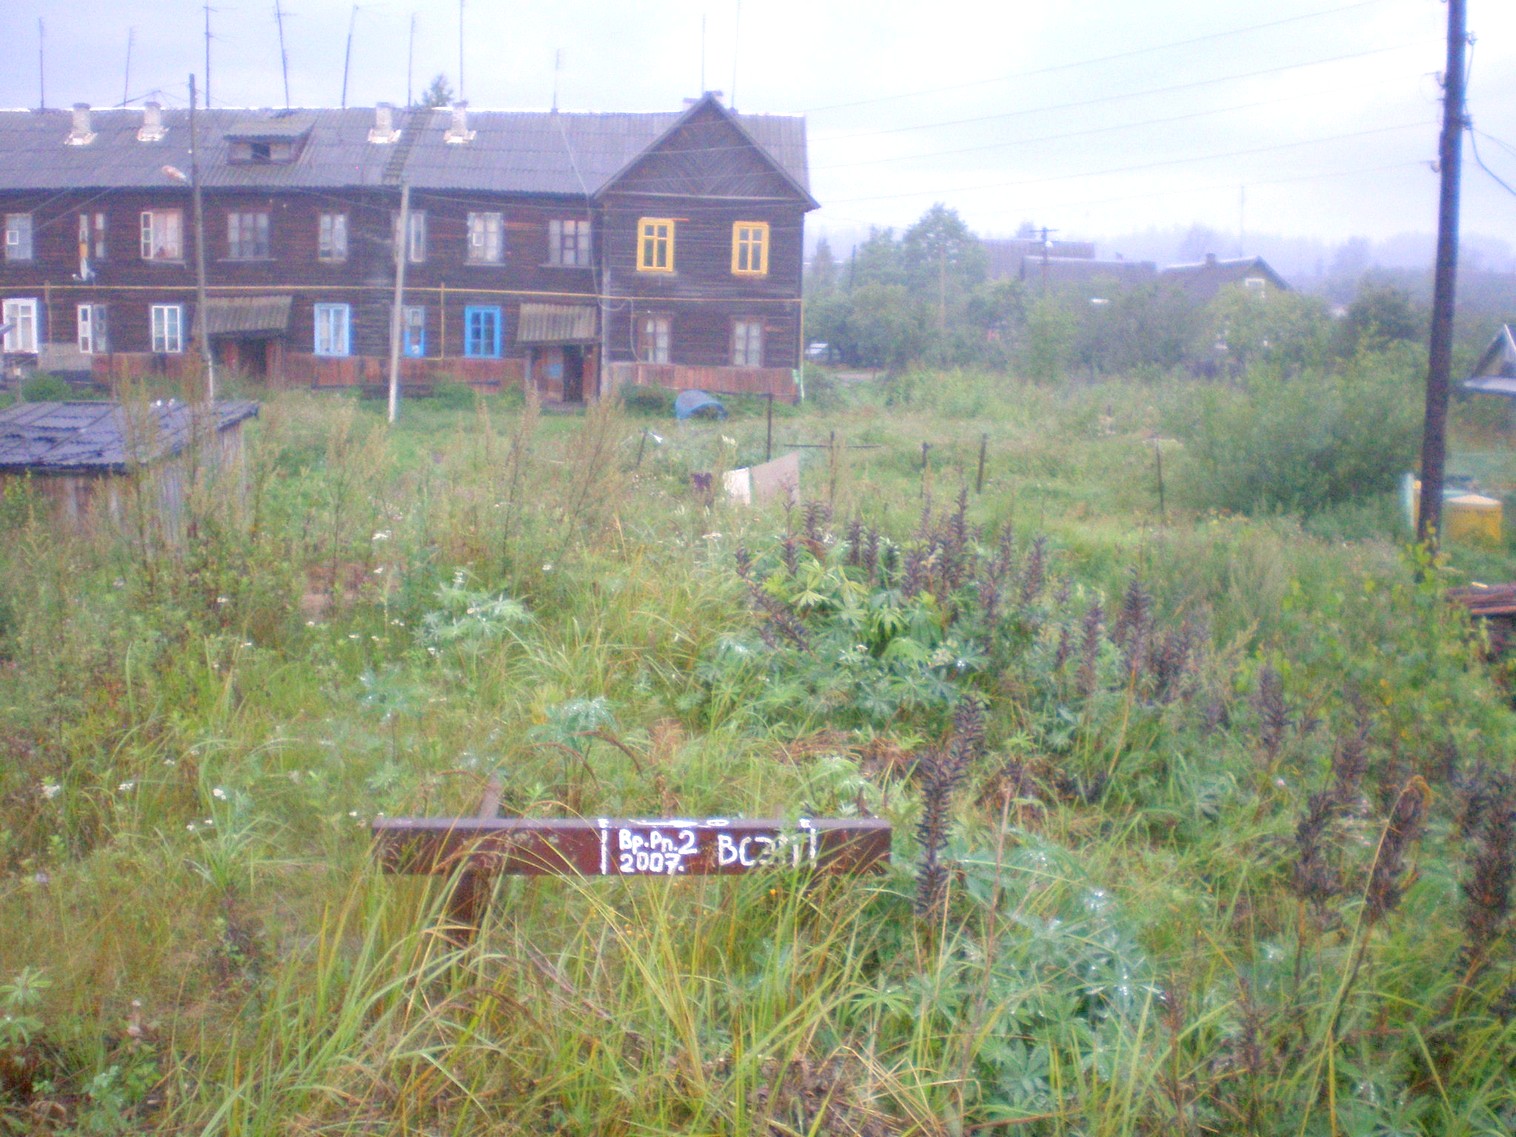 Узкоколейная железная дорога Пельгорского торфопредприятия — фотографии, сделанные в 2008 году (часть 2)